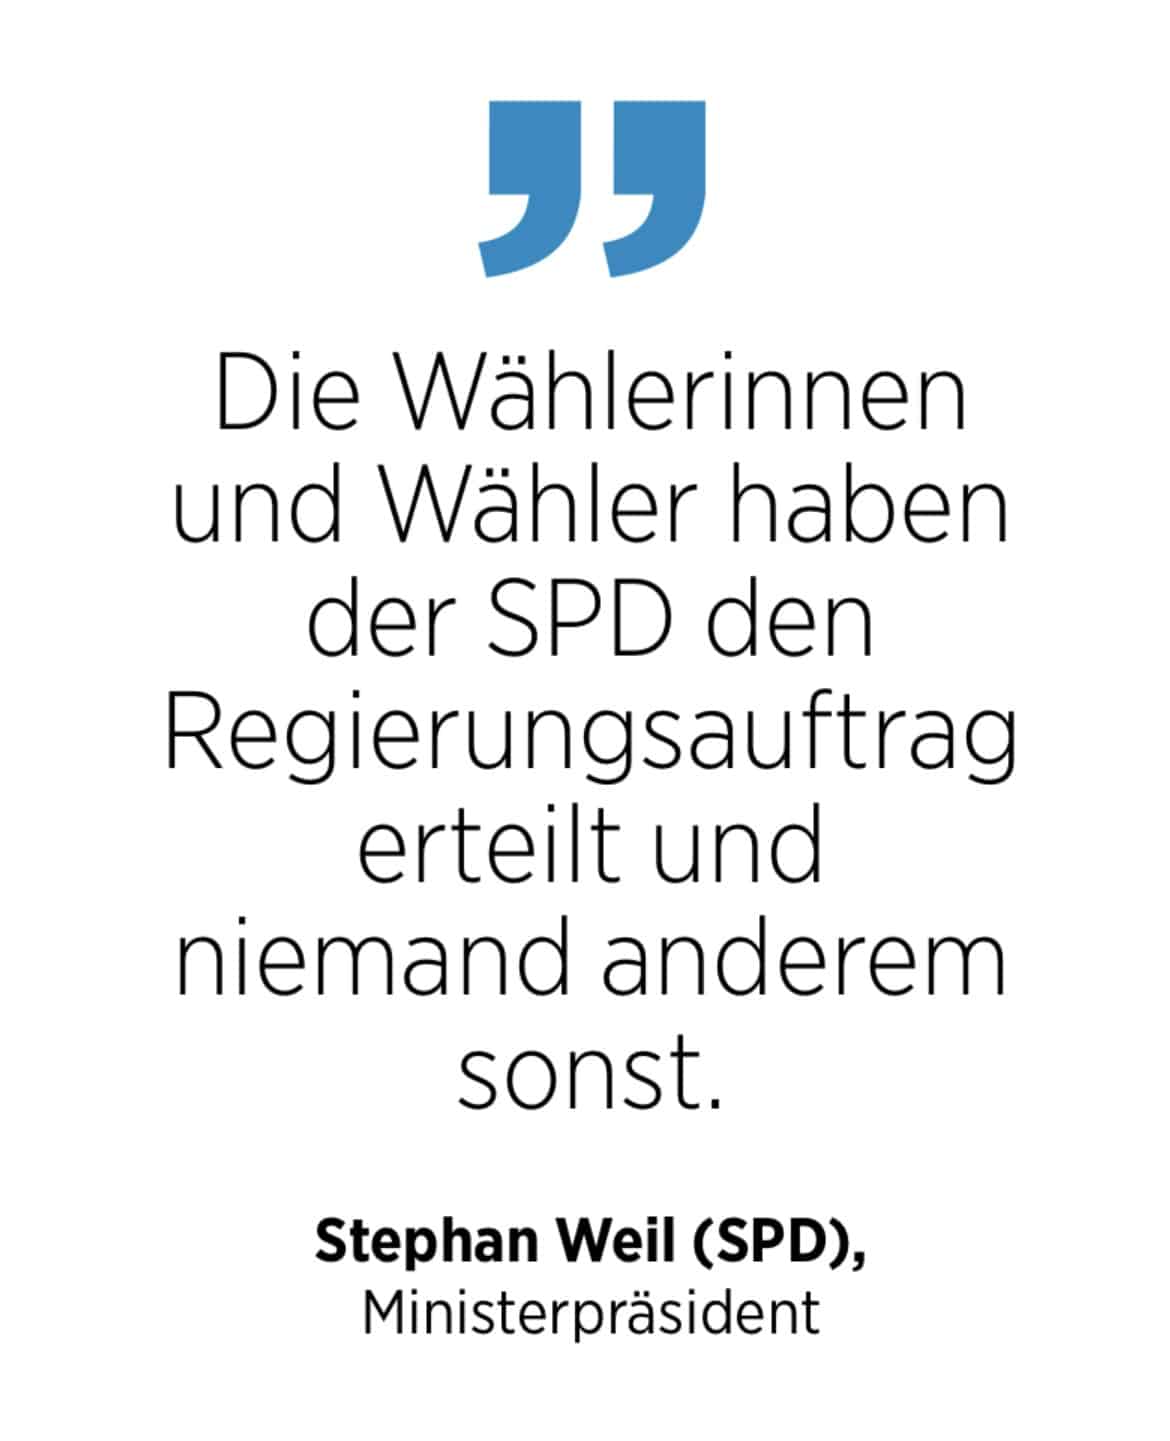 Zitat von Stephan Weil zum Ausgang der Niedersachsenwahl